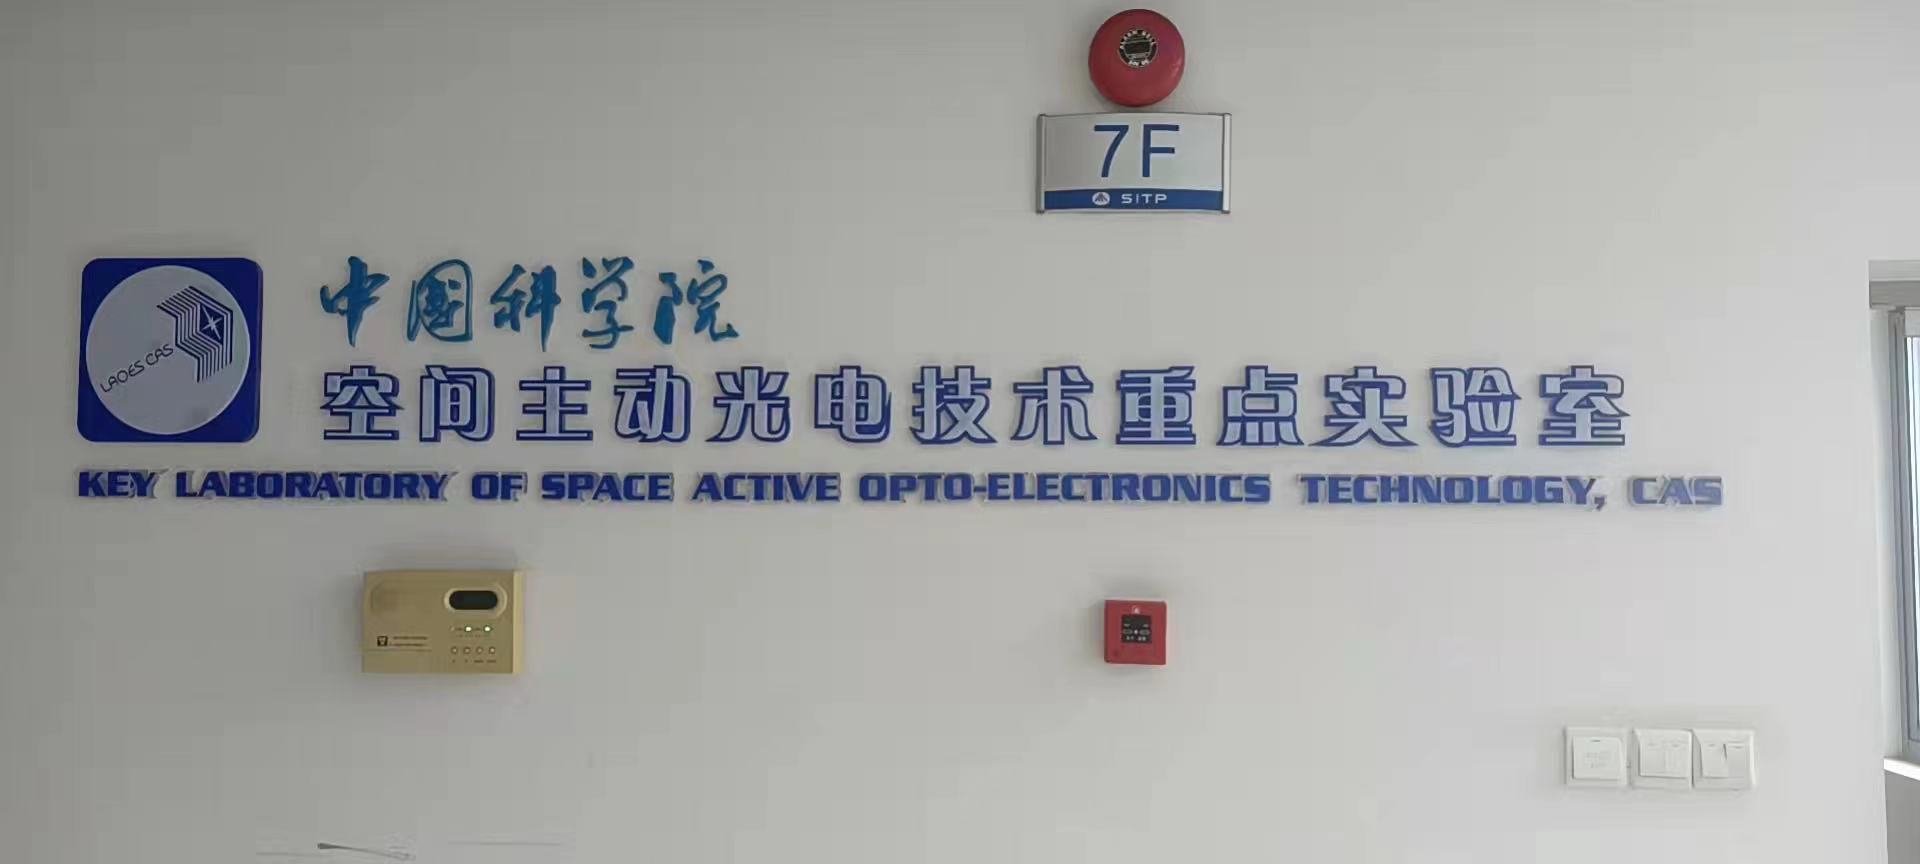 中国科学院空间主动光电技术重点实验室